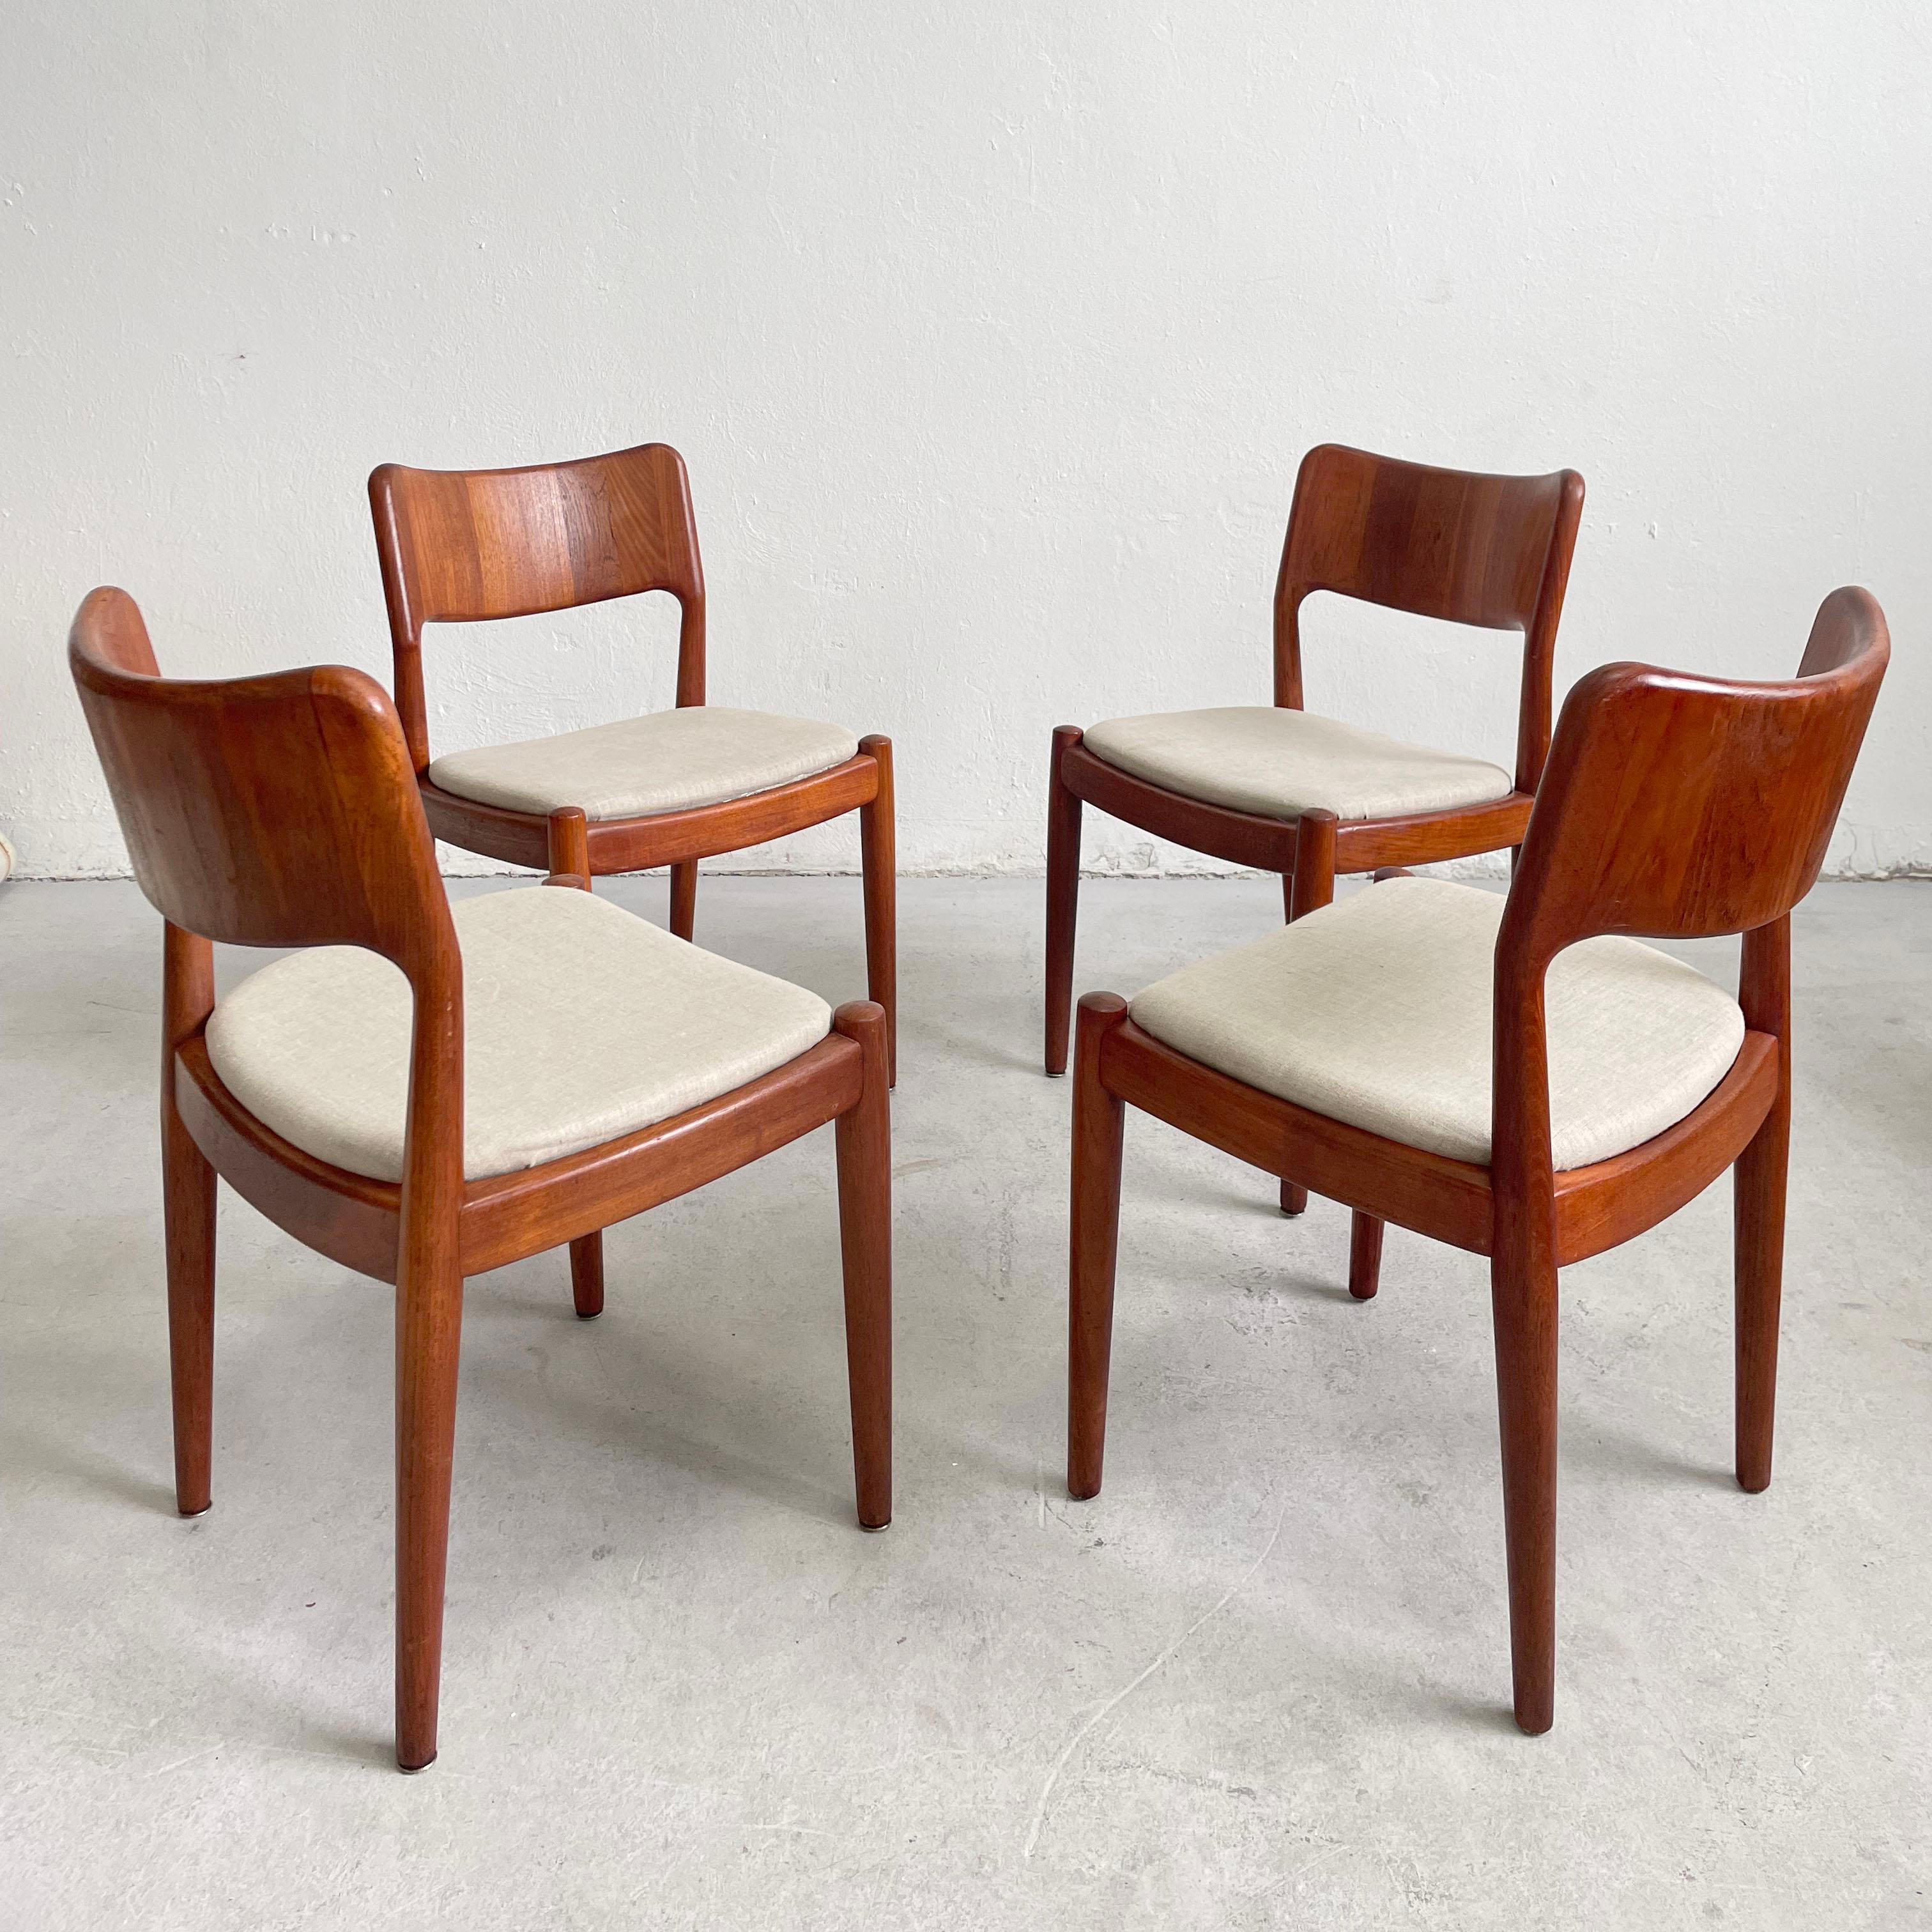 Satz von vier modernen dänischen Stühlen, hergestellt von dem dänischen Hersteller Glostrup Møbelfabrik in den 1960er Jahren. 

Die Stühle sind aus massivem Teakholz in einem warmen Braunton gefertigt, der eine schöne, reiche Holzmaserung zeigt. Die